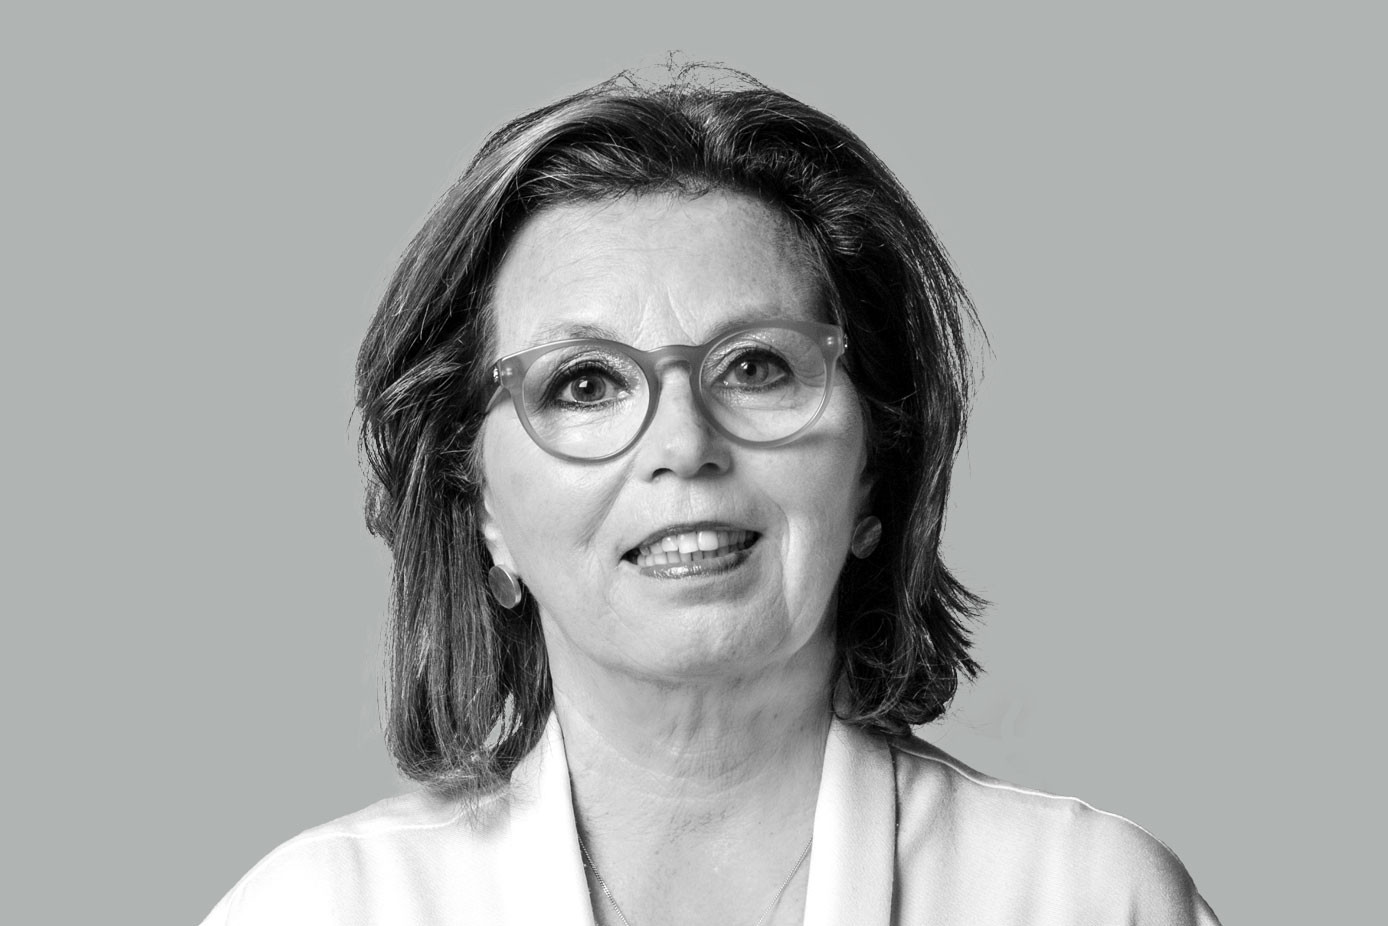 Karin Schintgen (Photo: Maison Moderne)